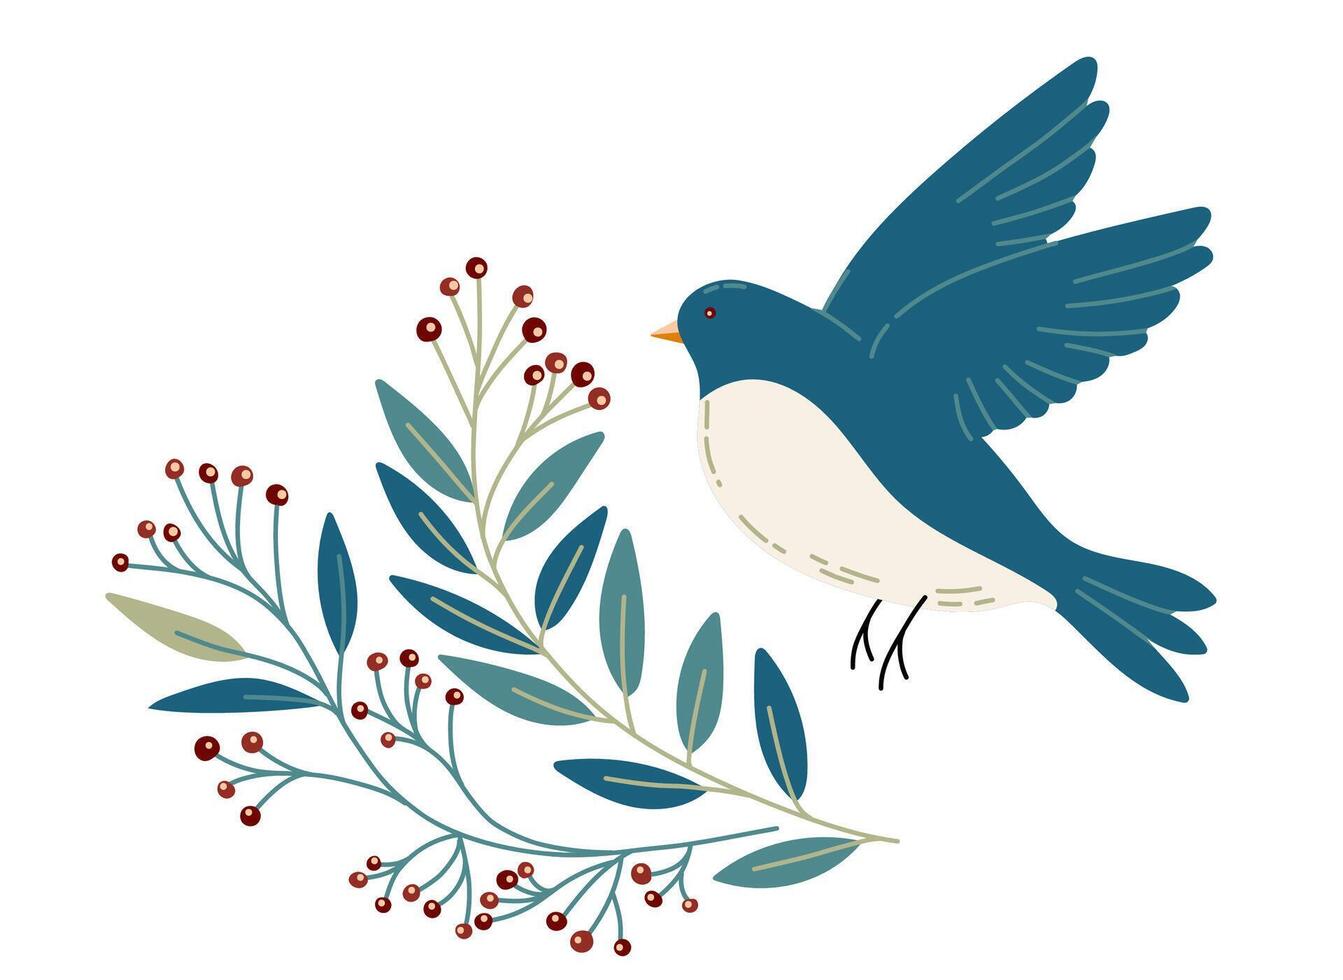 pájaro y flores con diferente adornos pájaro en sencillo dibujos animados estilo. plano vector ilustración